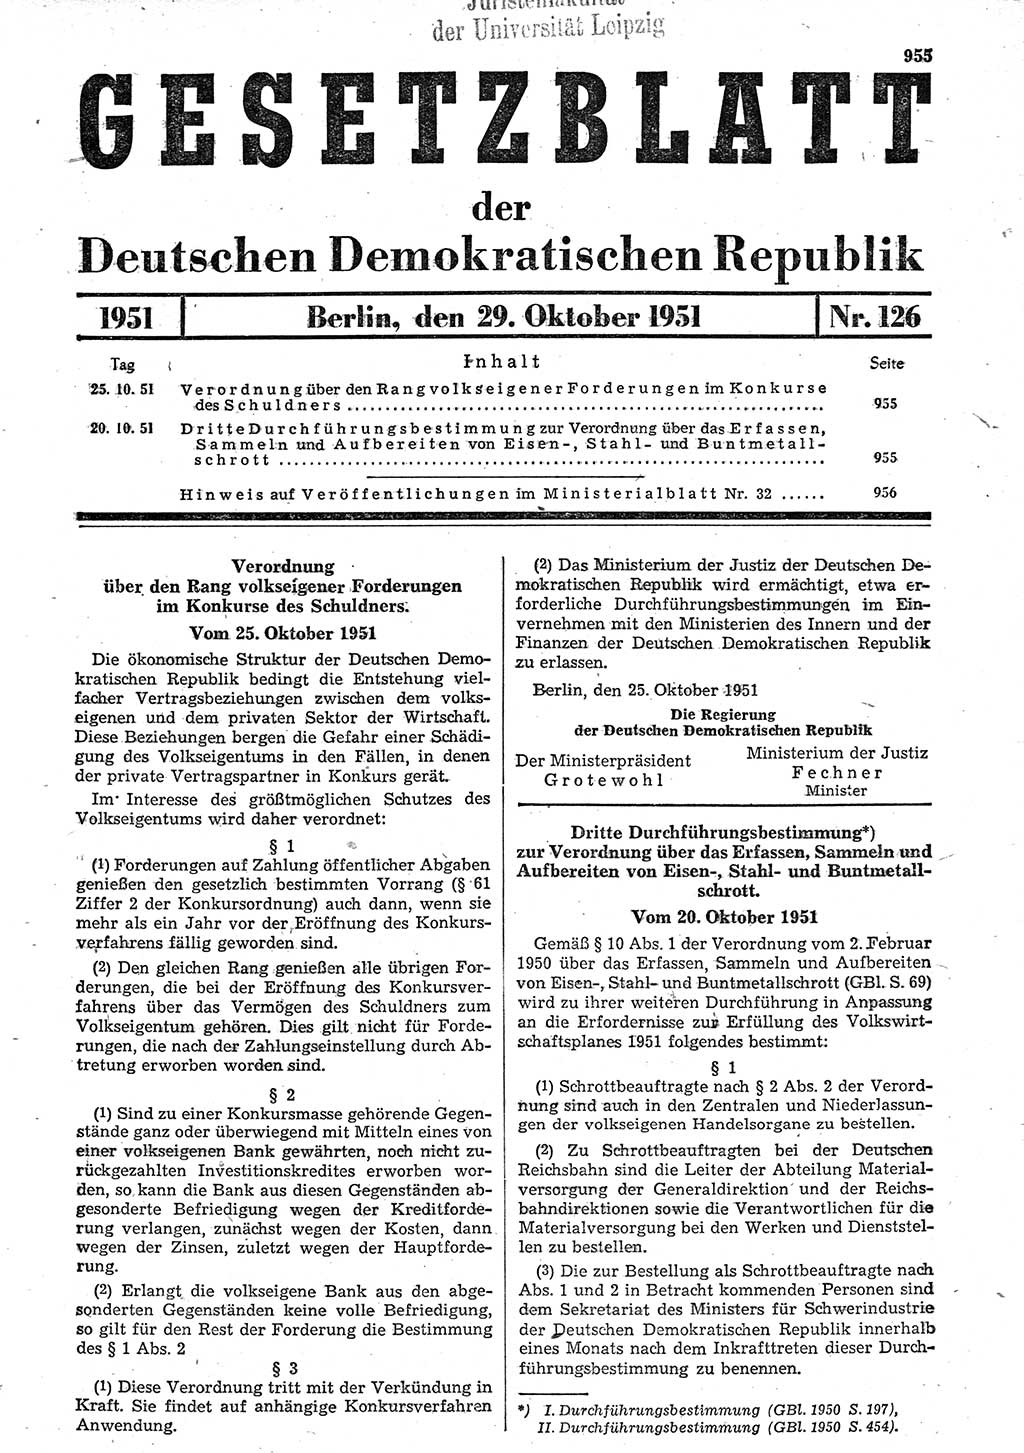 Gesetzblatt (GBl.) der Deutschen Demokratischen Republik (DDR) 1951, Seite 955 (GBl. DDR 1951, S. 955)